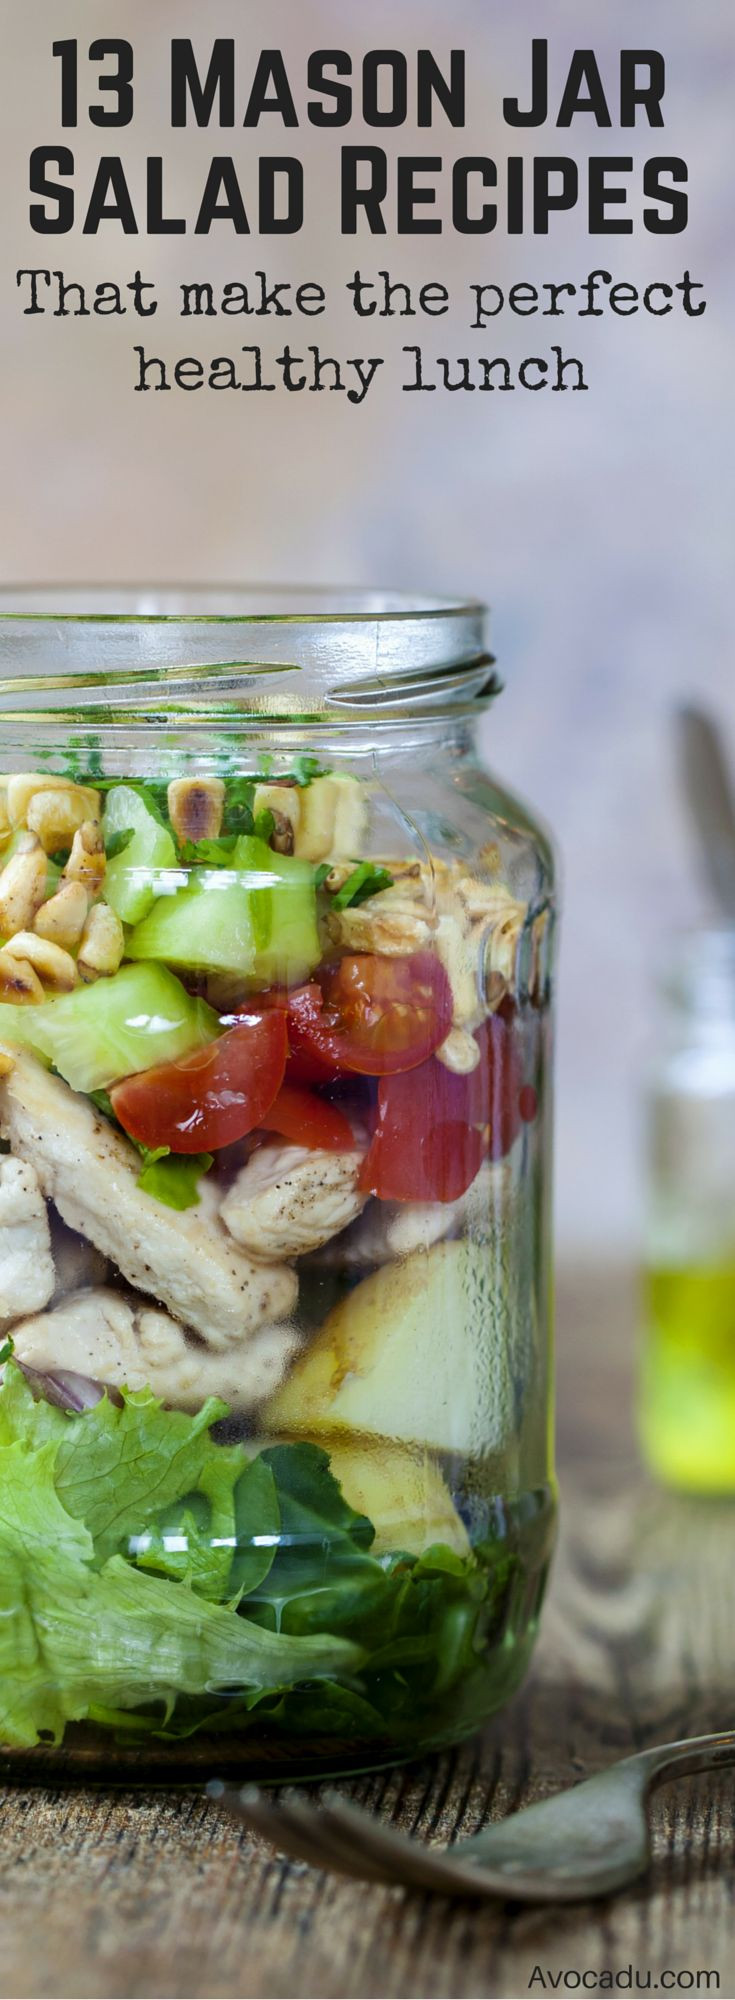 Healthy Jar Salads
 De 25 bedste idéer inden for Mason jar salads på Pinterest